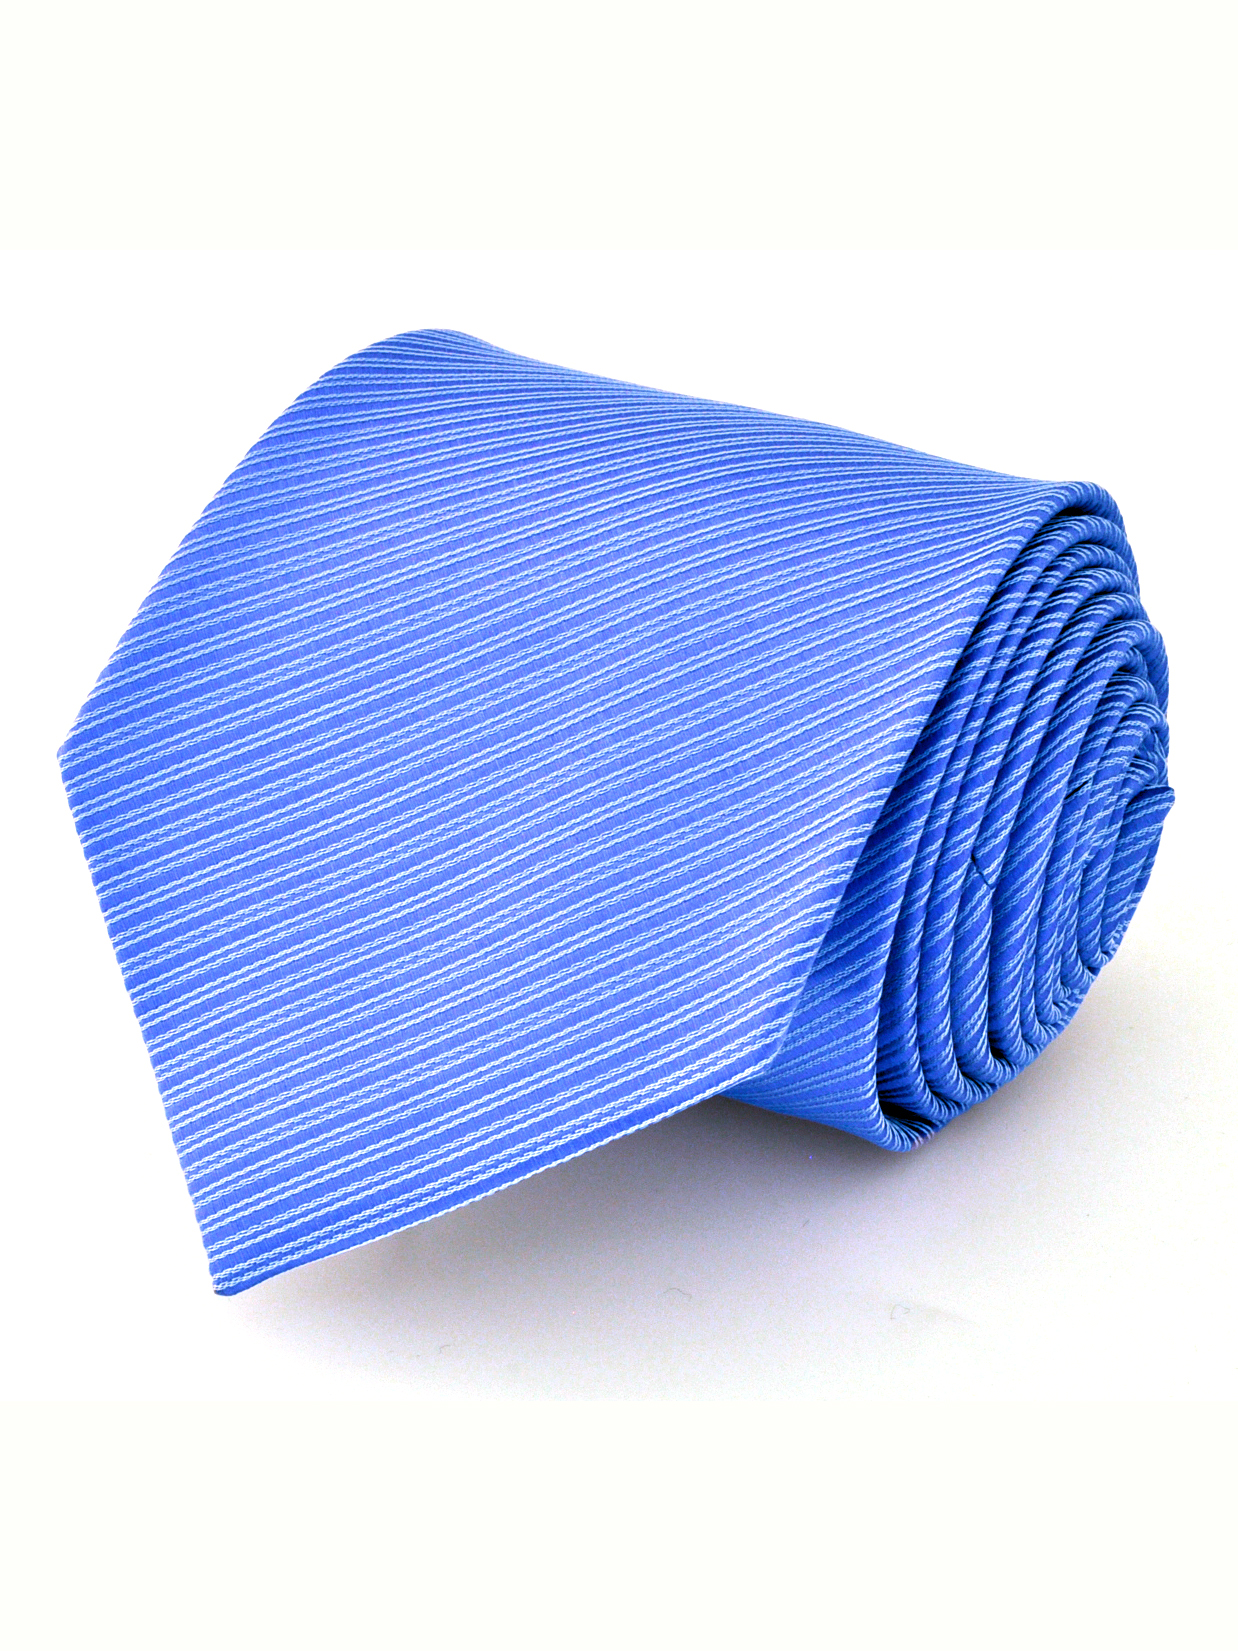 Галстук широкий жаккардовый голубой с полосатой текстурой описание: Фасон - , Материал - Полиэстер, Цвет - Голубой, Размер - 8 см x 150 см, Страна производства - Турция.